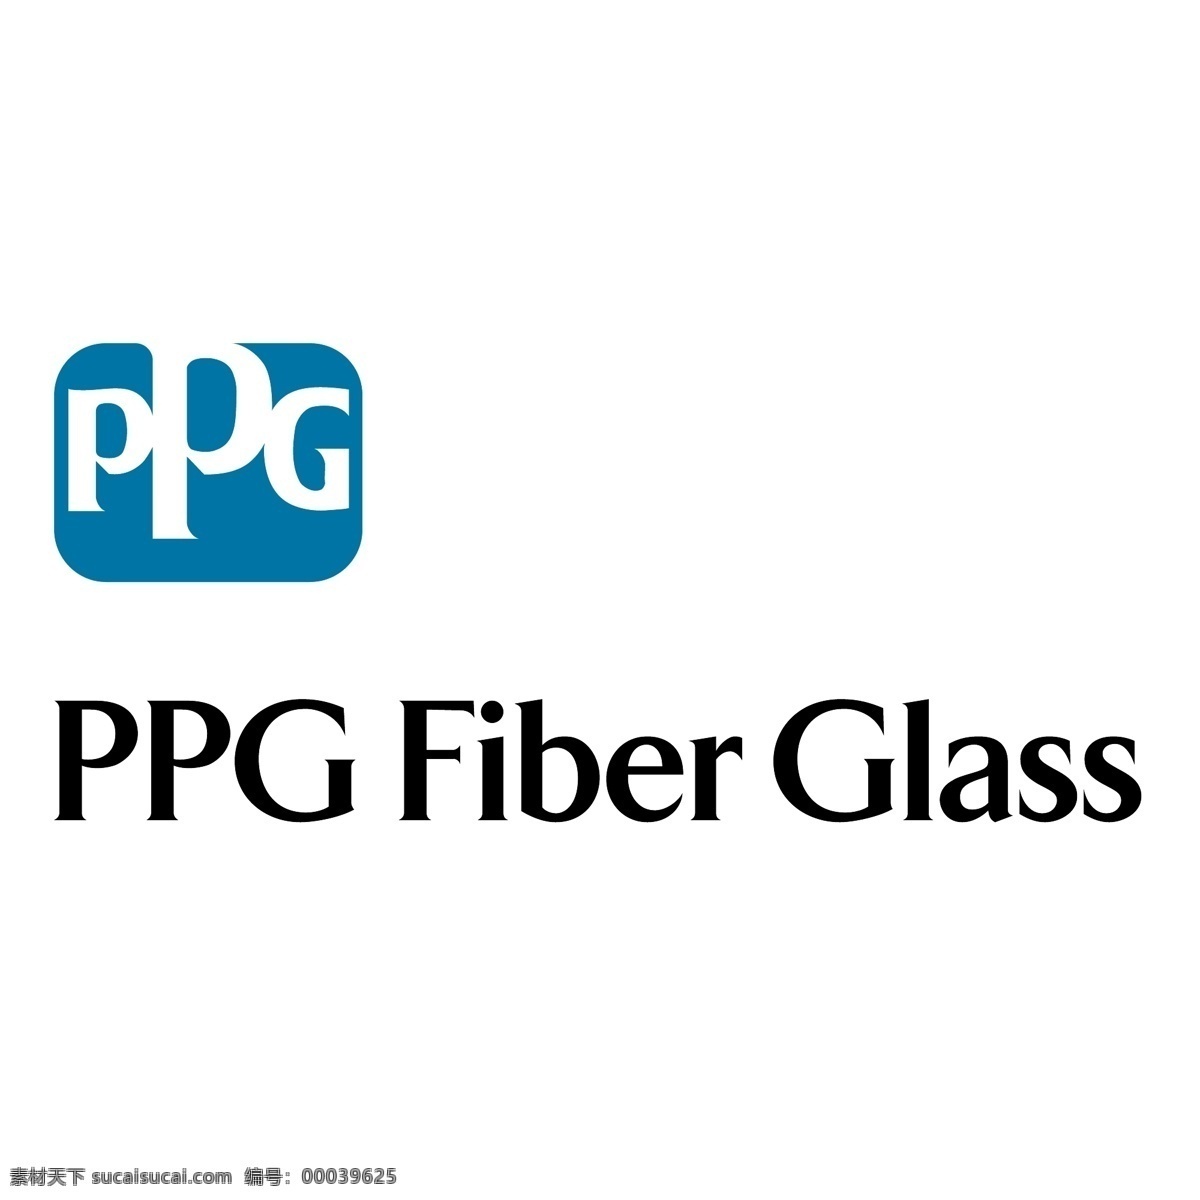 ppg 玻璃纤维 玻璃 矢量设计 纤维 艺术玻璃 ppg的纤维 ppg玻璃 矢量 自由 玻璃载体 载体 载体自由 图像 向量 矢量图 建筑家居